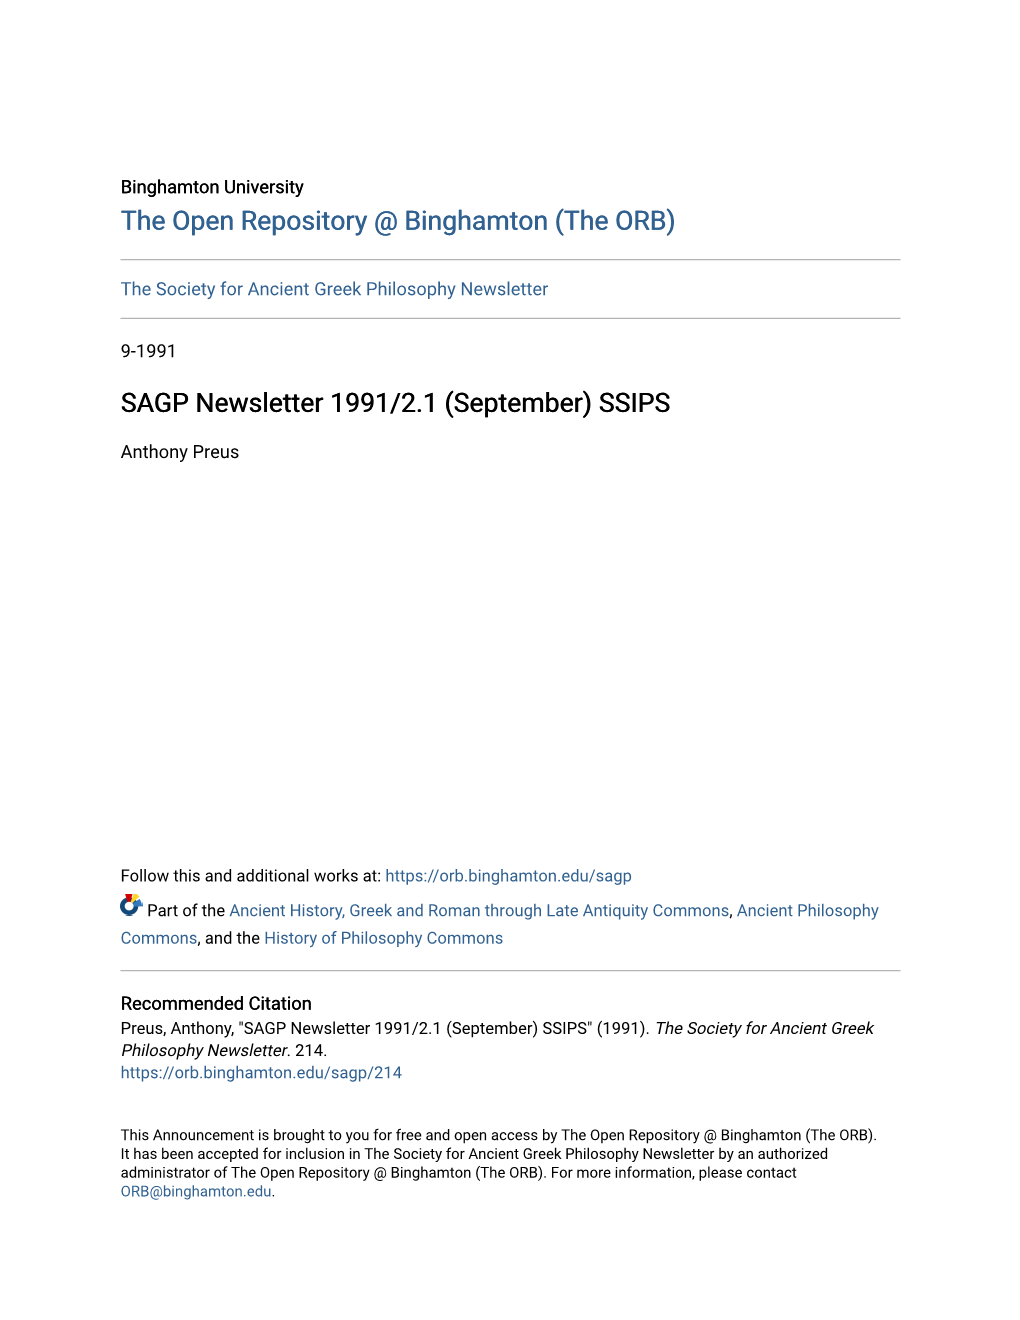 SAGP Newsletter 1991/2.1 (September) SSIPS